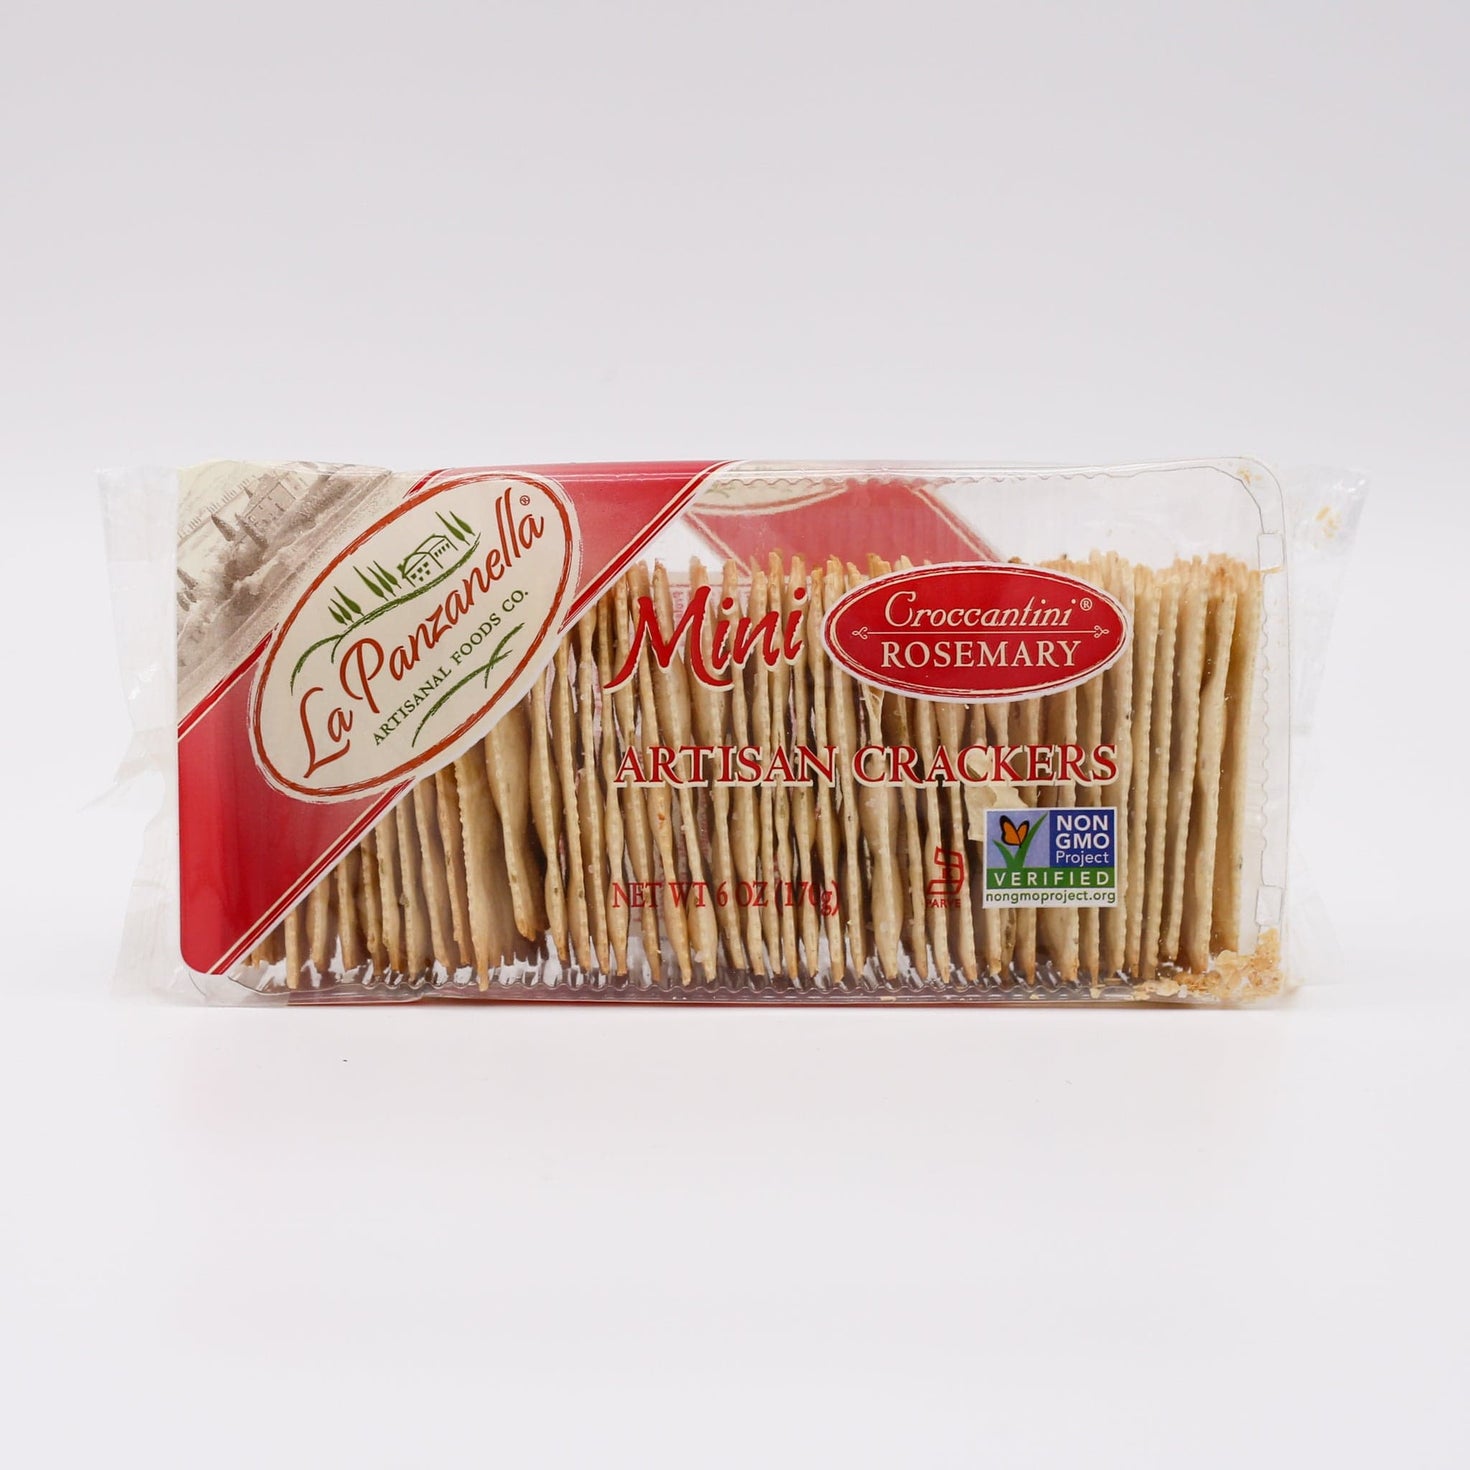 La Panzanella Crackers: Rosemary Croccantini 6oz